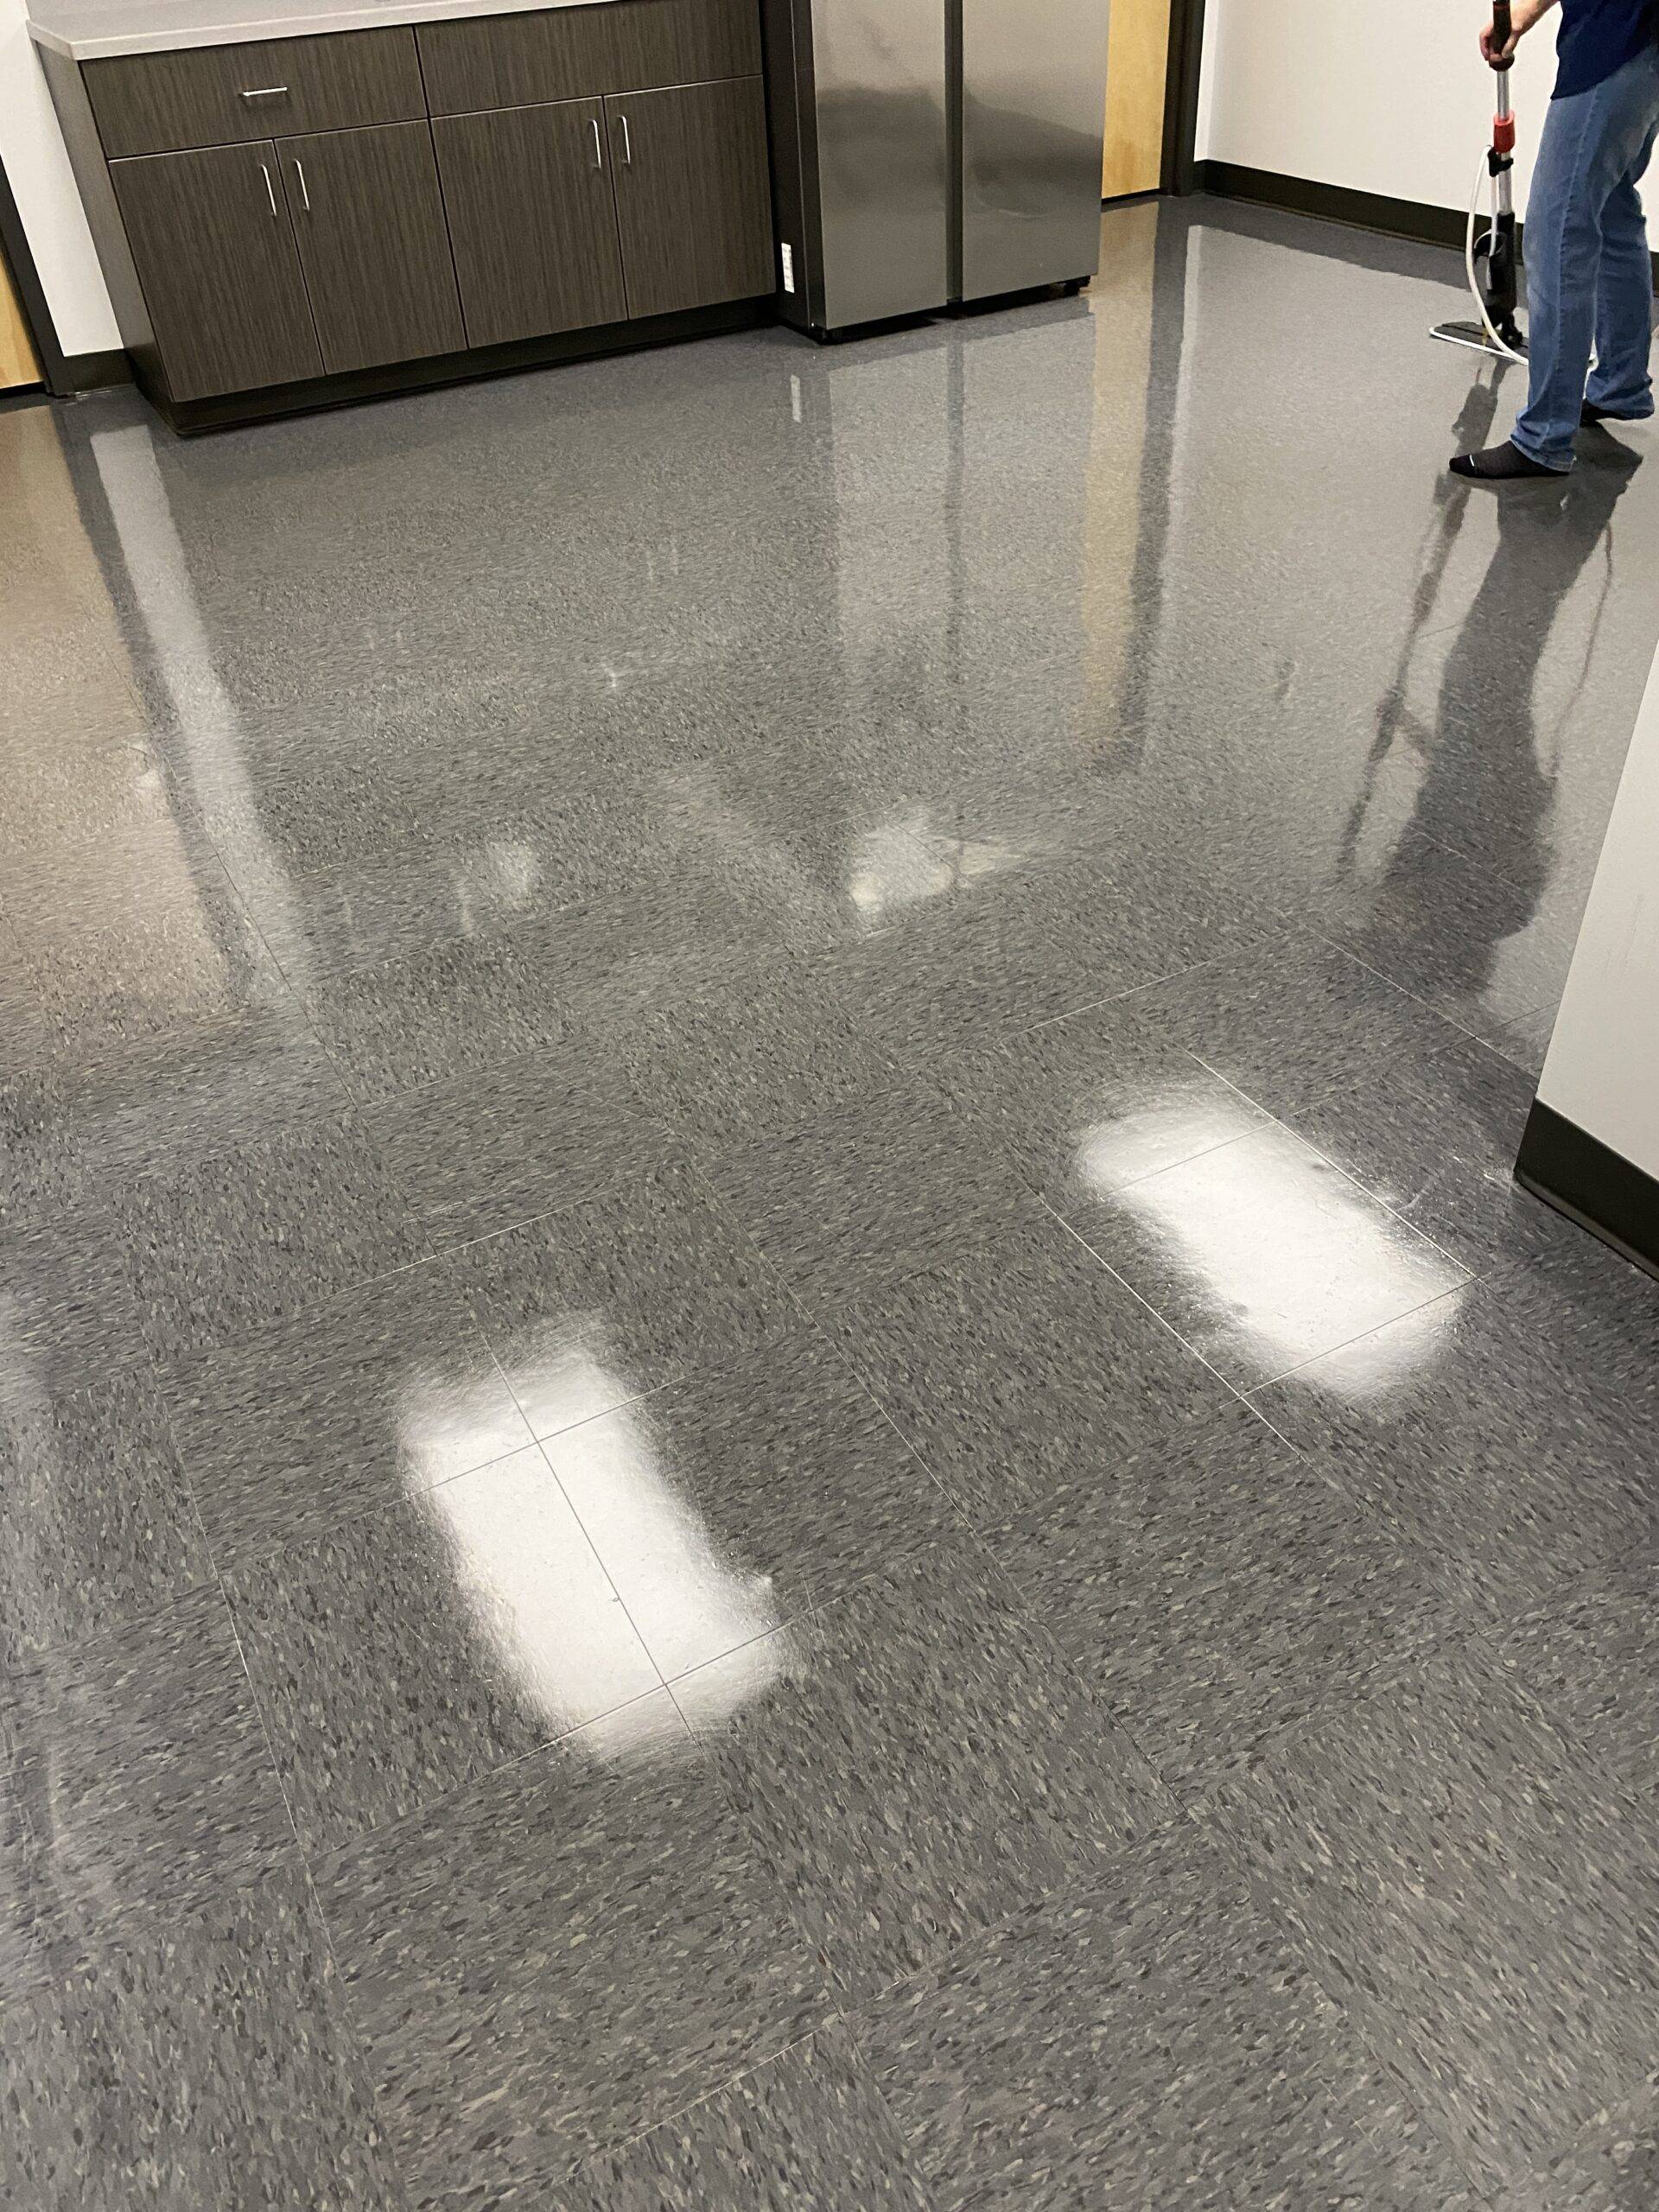 Jo Janitor Offers Floor Waxing